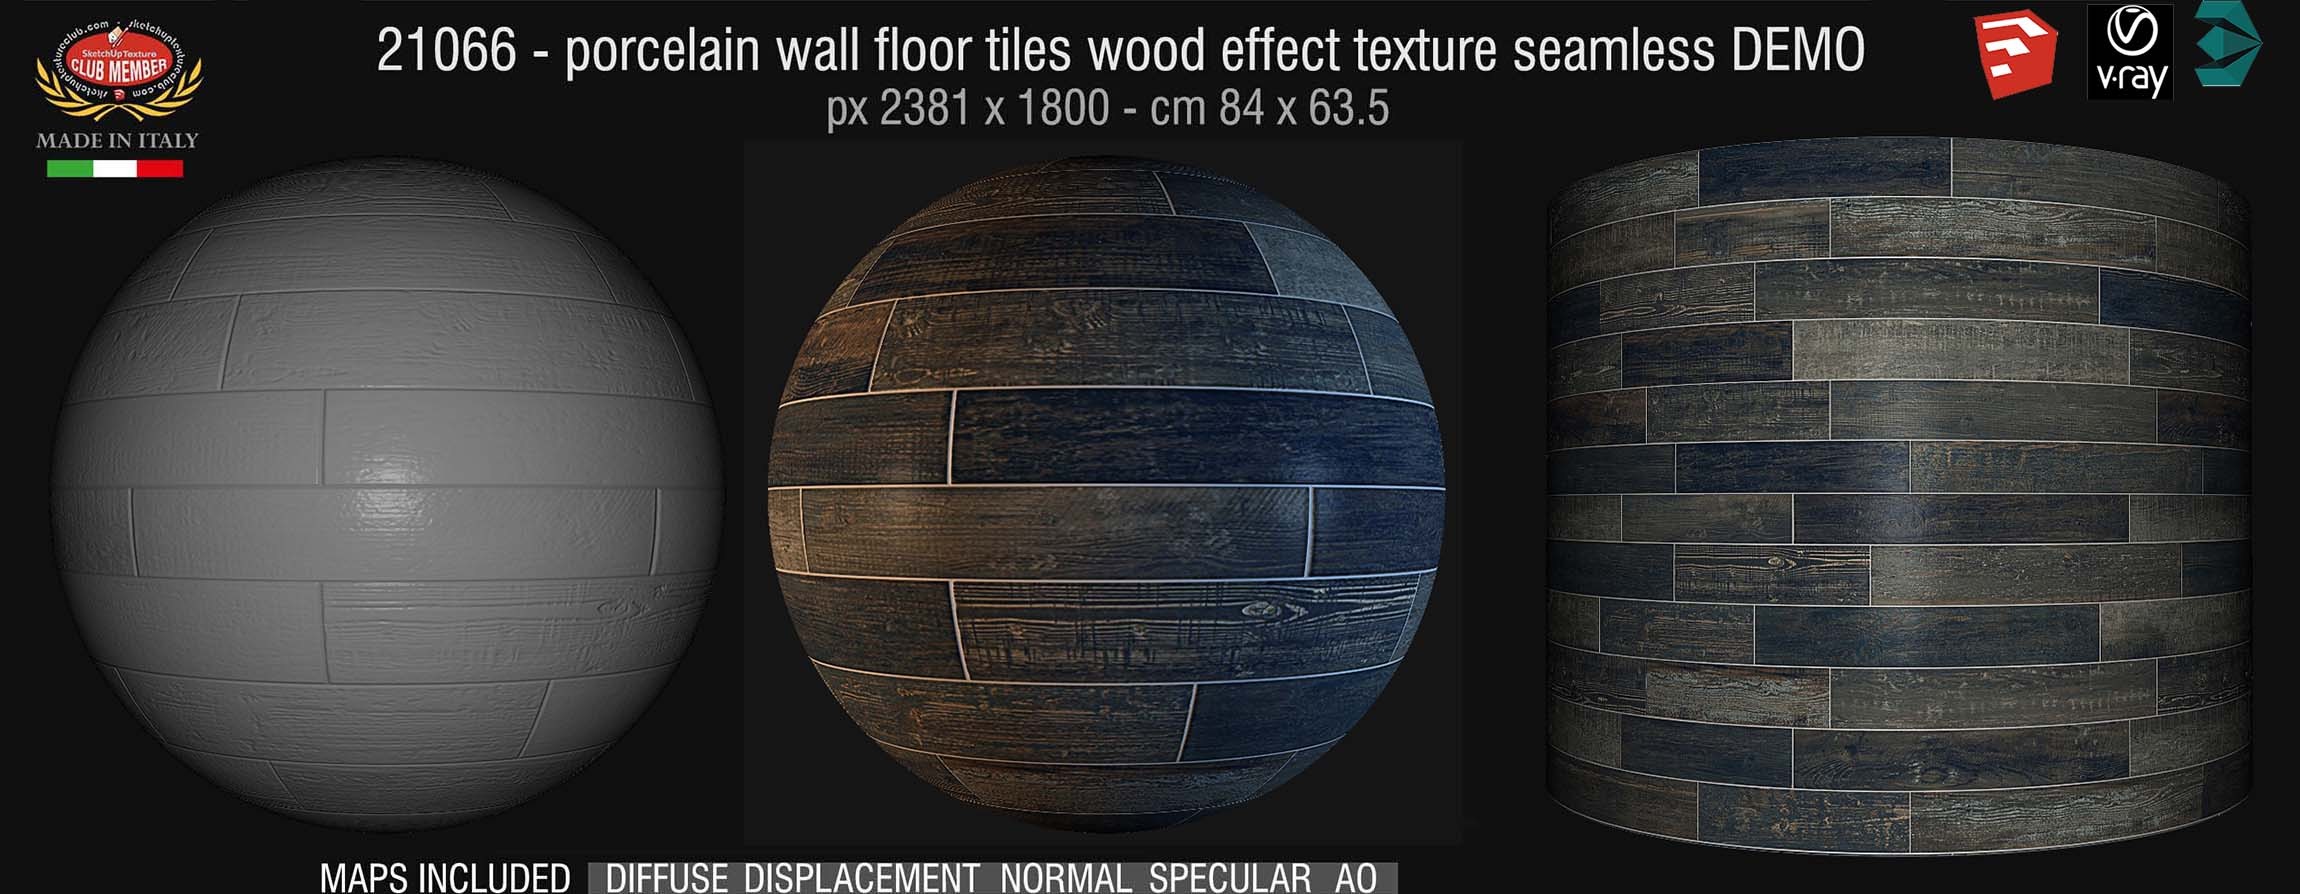 1066 Porcelain wall floor tiles wood effect PBR texture seamless DEMO